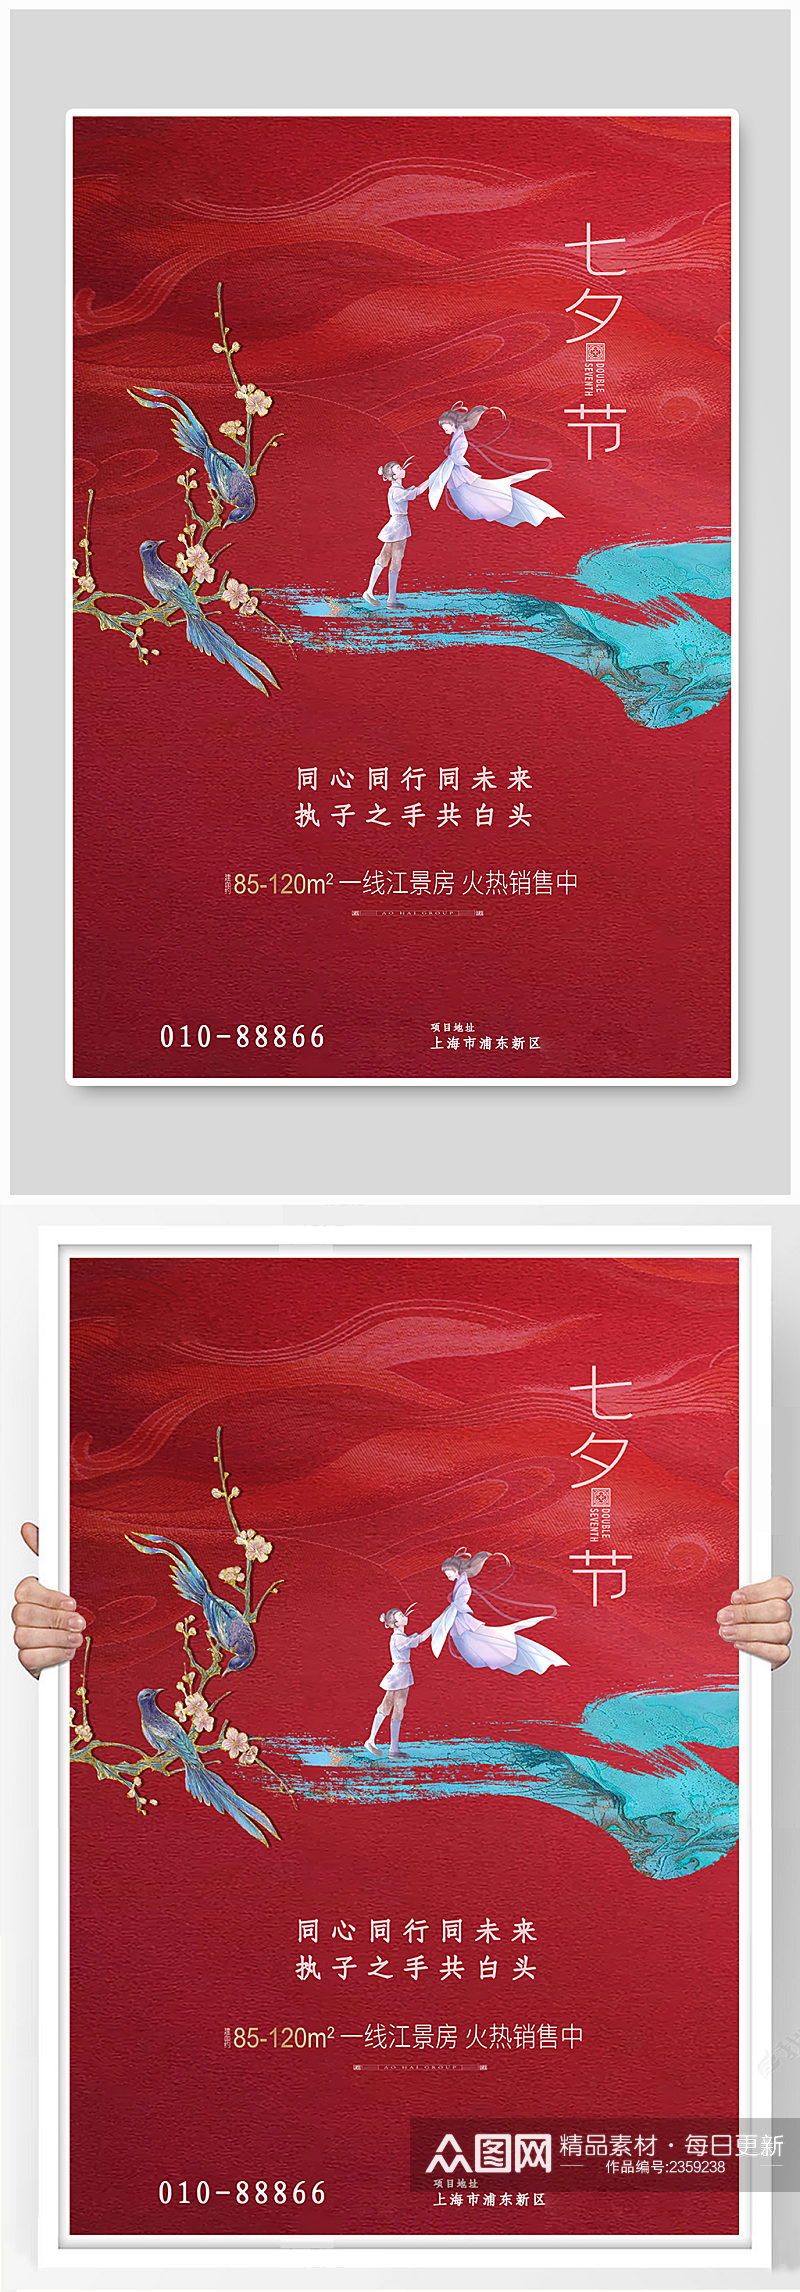 七夕情人节喜鹊牛郎织女红色简约大气海报素材